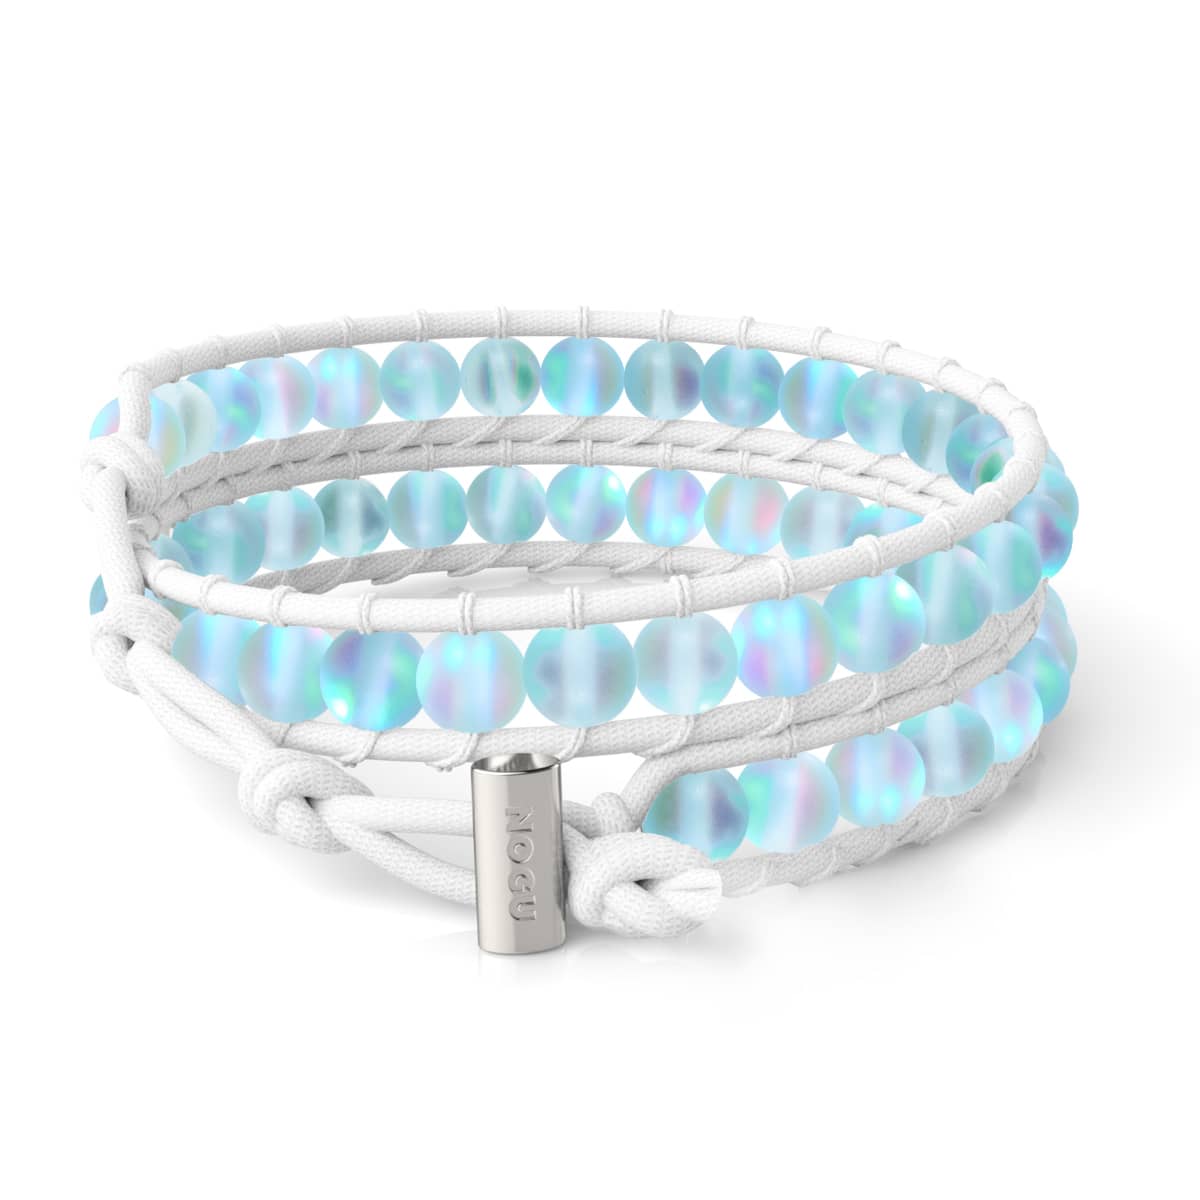 Wire Wrap Bracelet — The Glass Studio